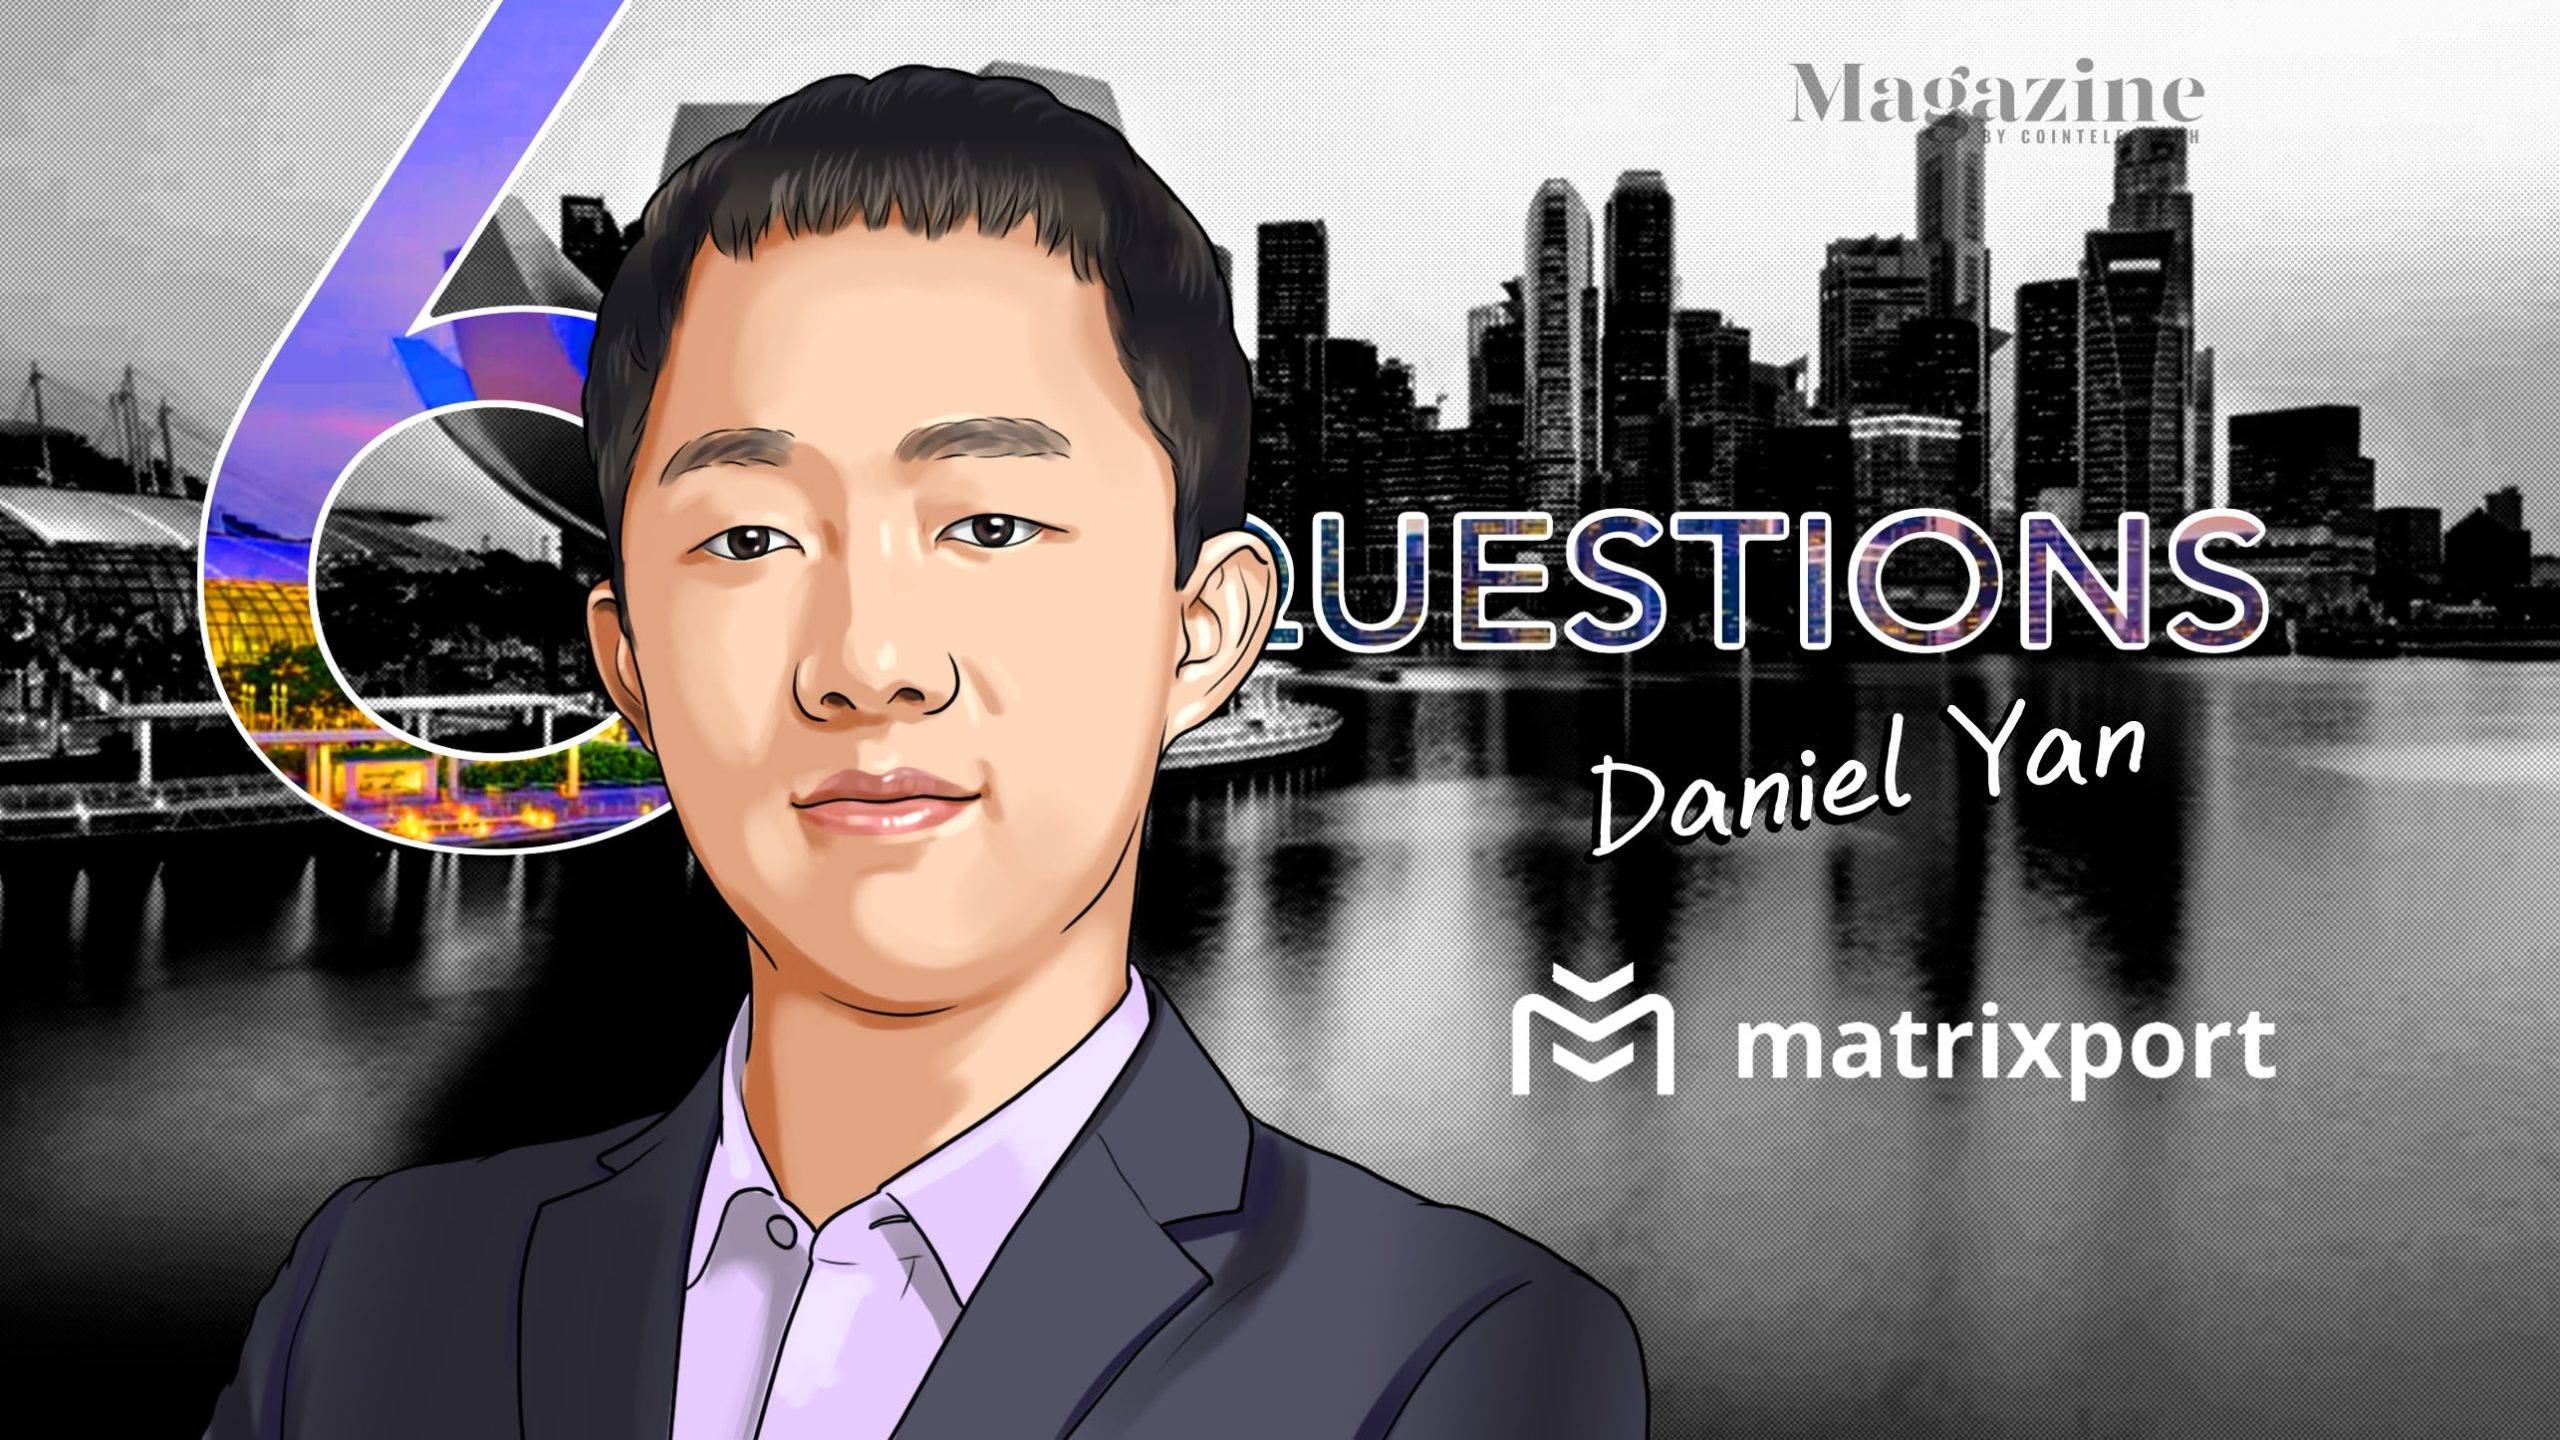 6 Questions for Daniel Yan of Matrixport